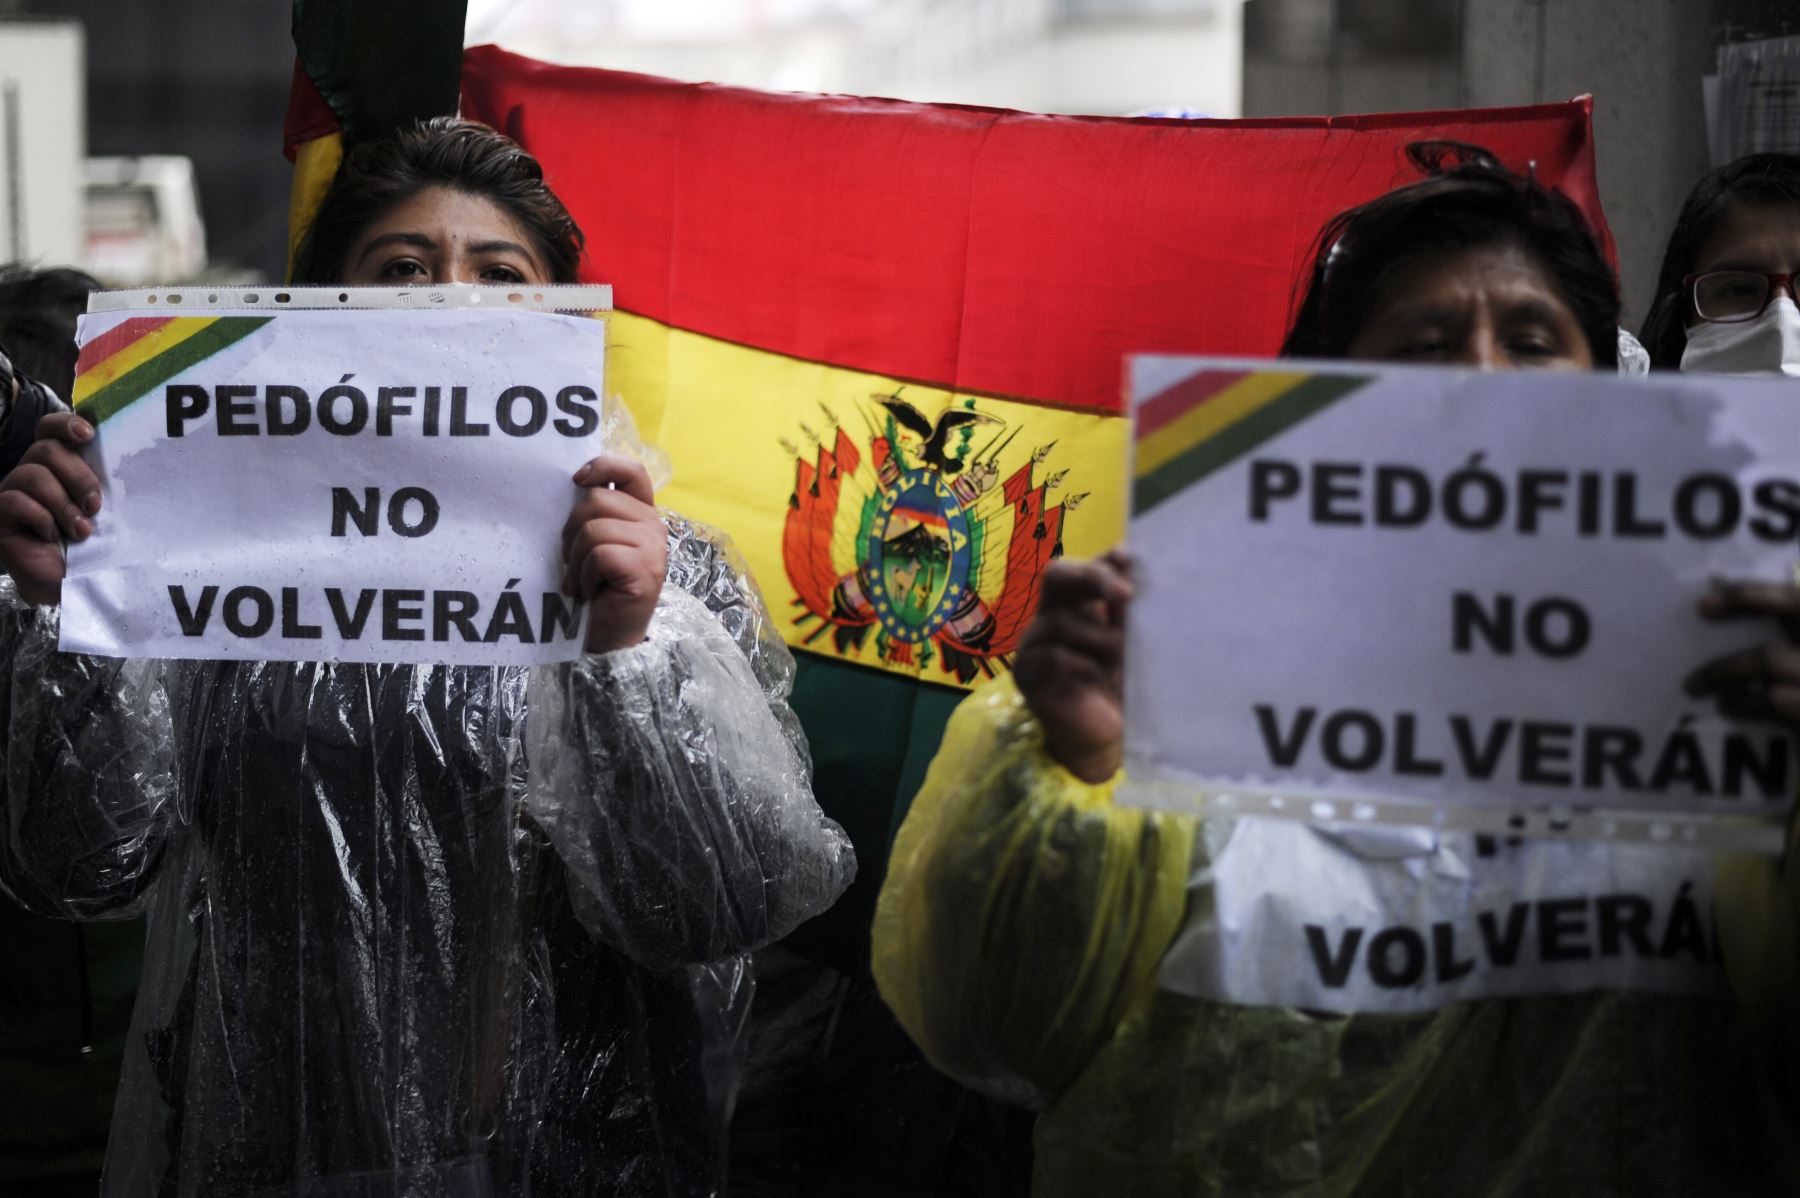 Activistas y opositores al ex presidente de Bolivia, Evo Morales, protestan con carteles que dicen "Los pedófilos no volverán" frente a la Corte de Justicia de Bolivia en La Paz. Foto: AFP